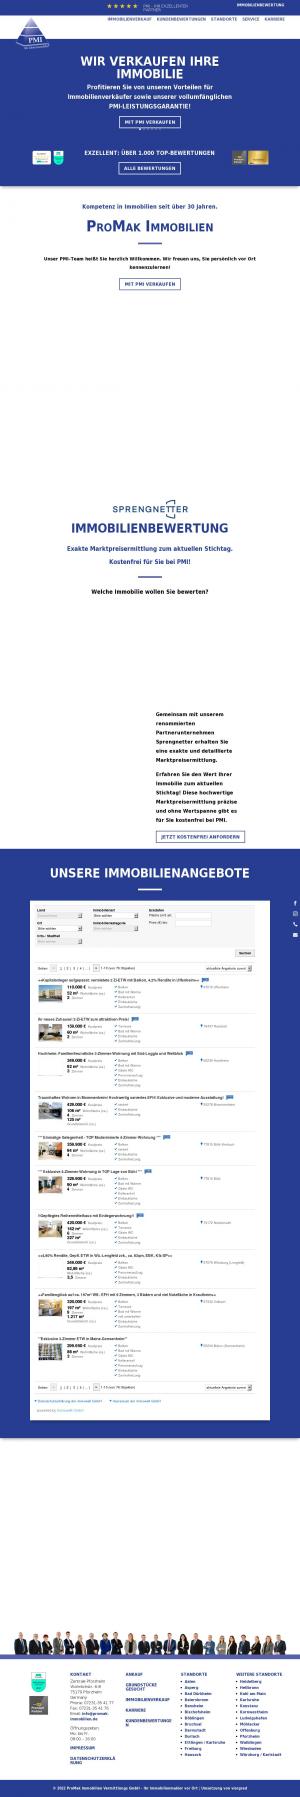 www.promak-immobilien.de